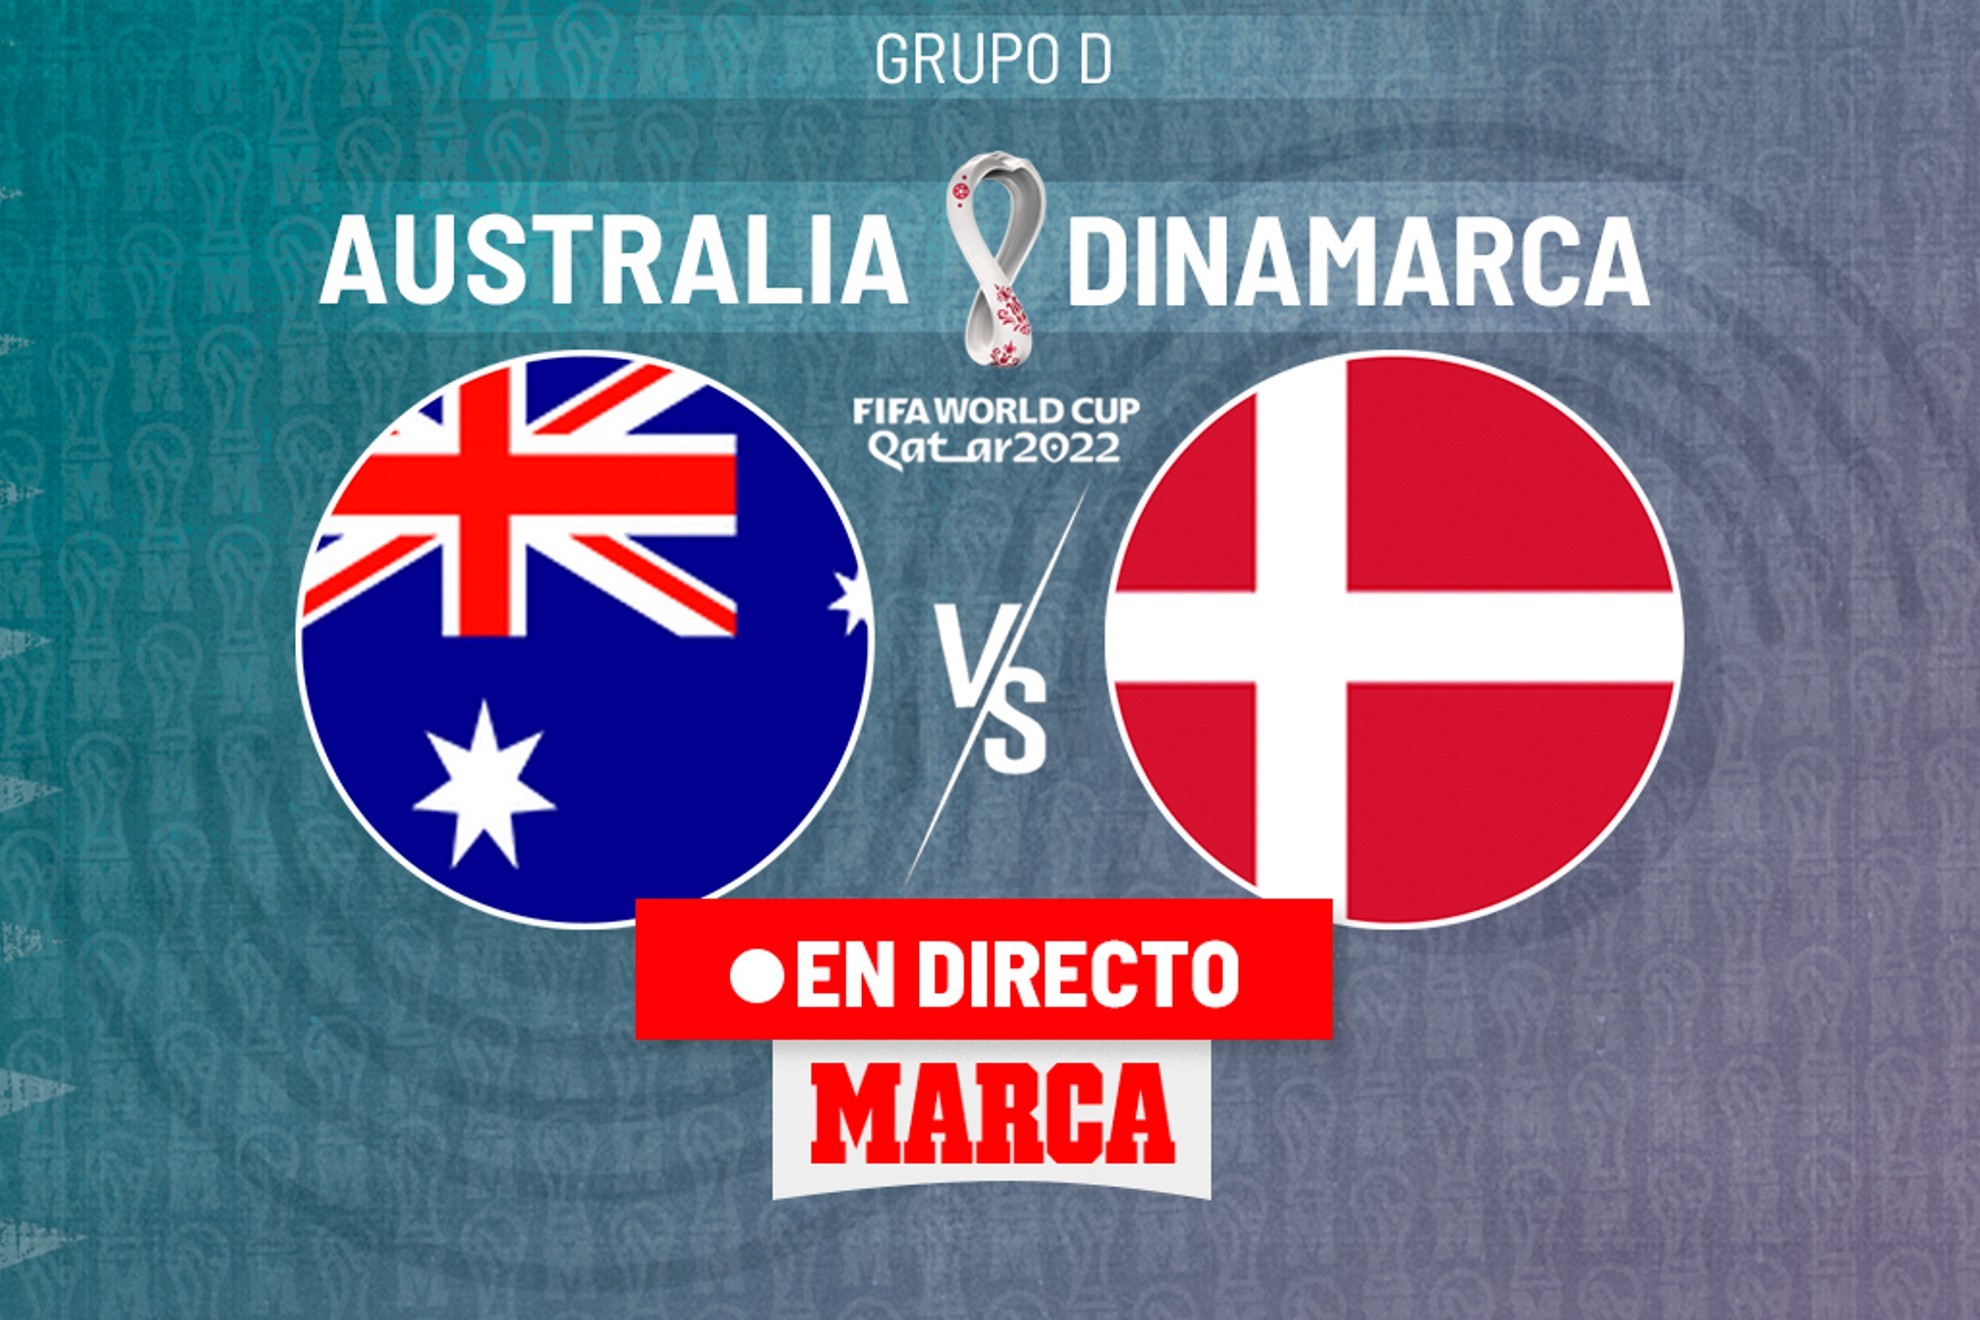 Australia - Dinamarca en directo hoy: resumen, resultado y goles